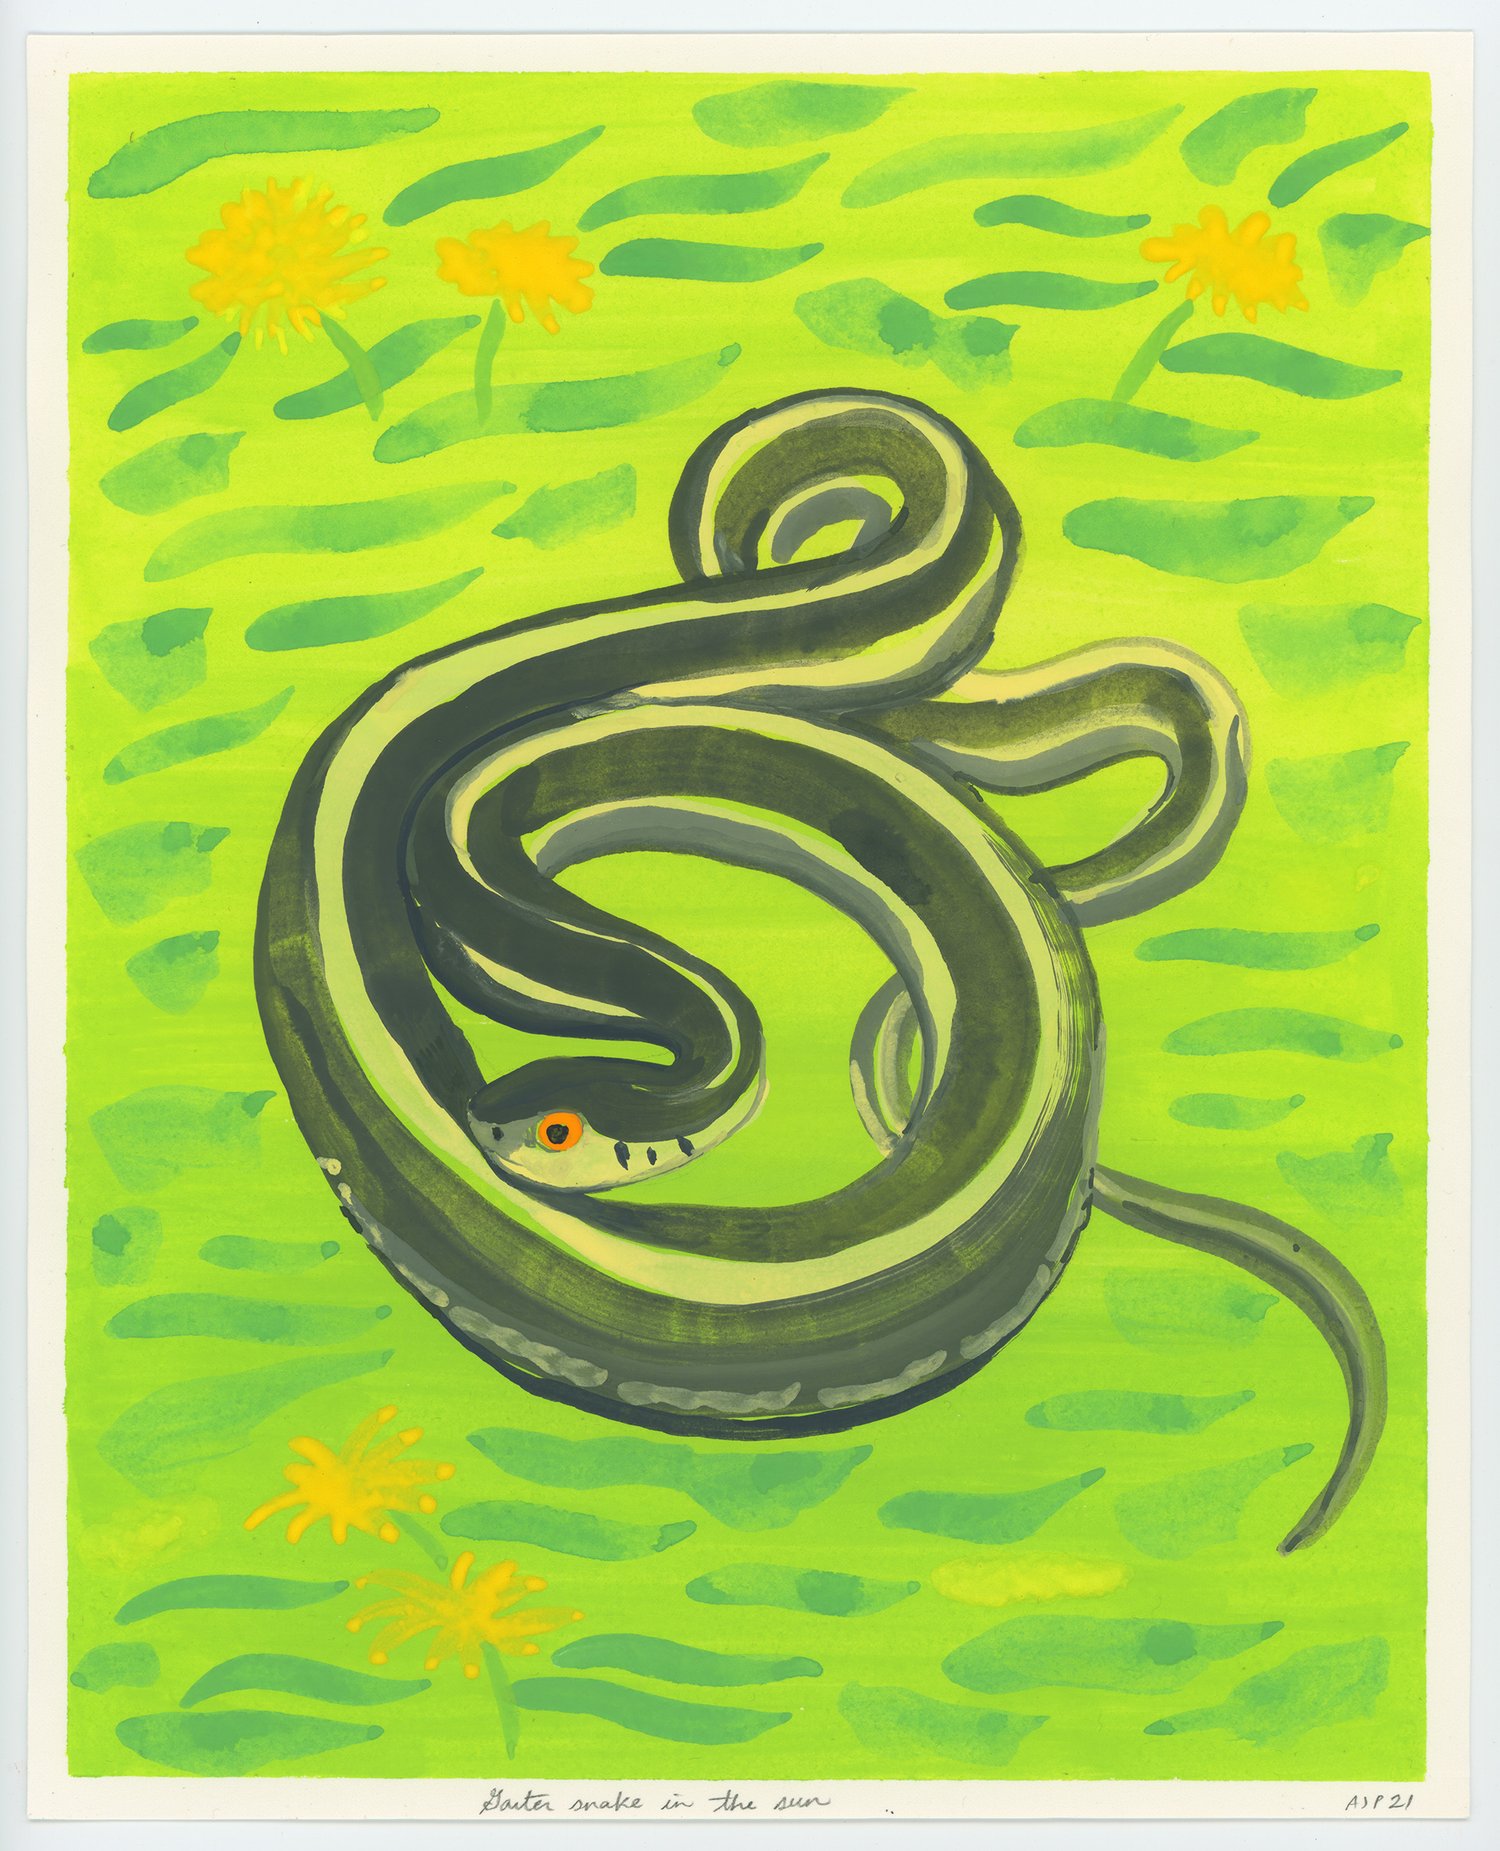 Garter Snake in the Sun